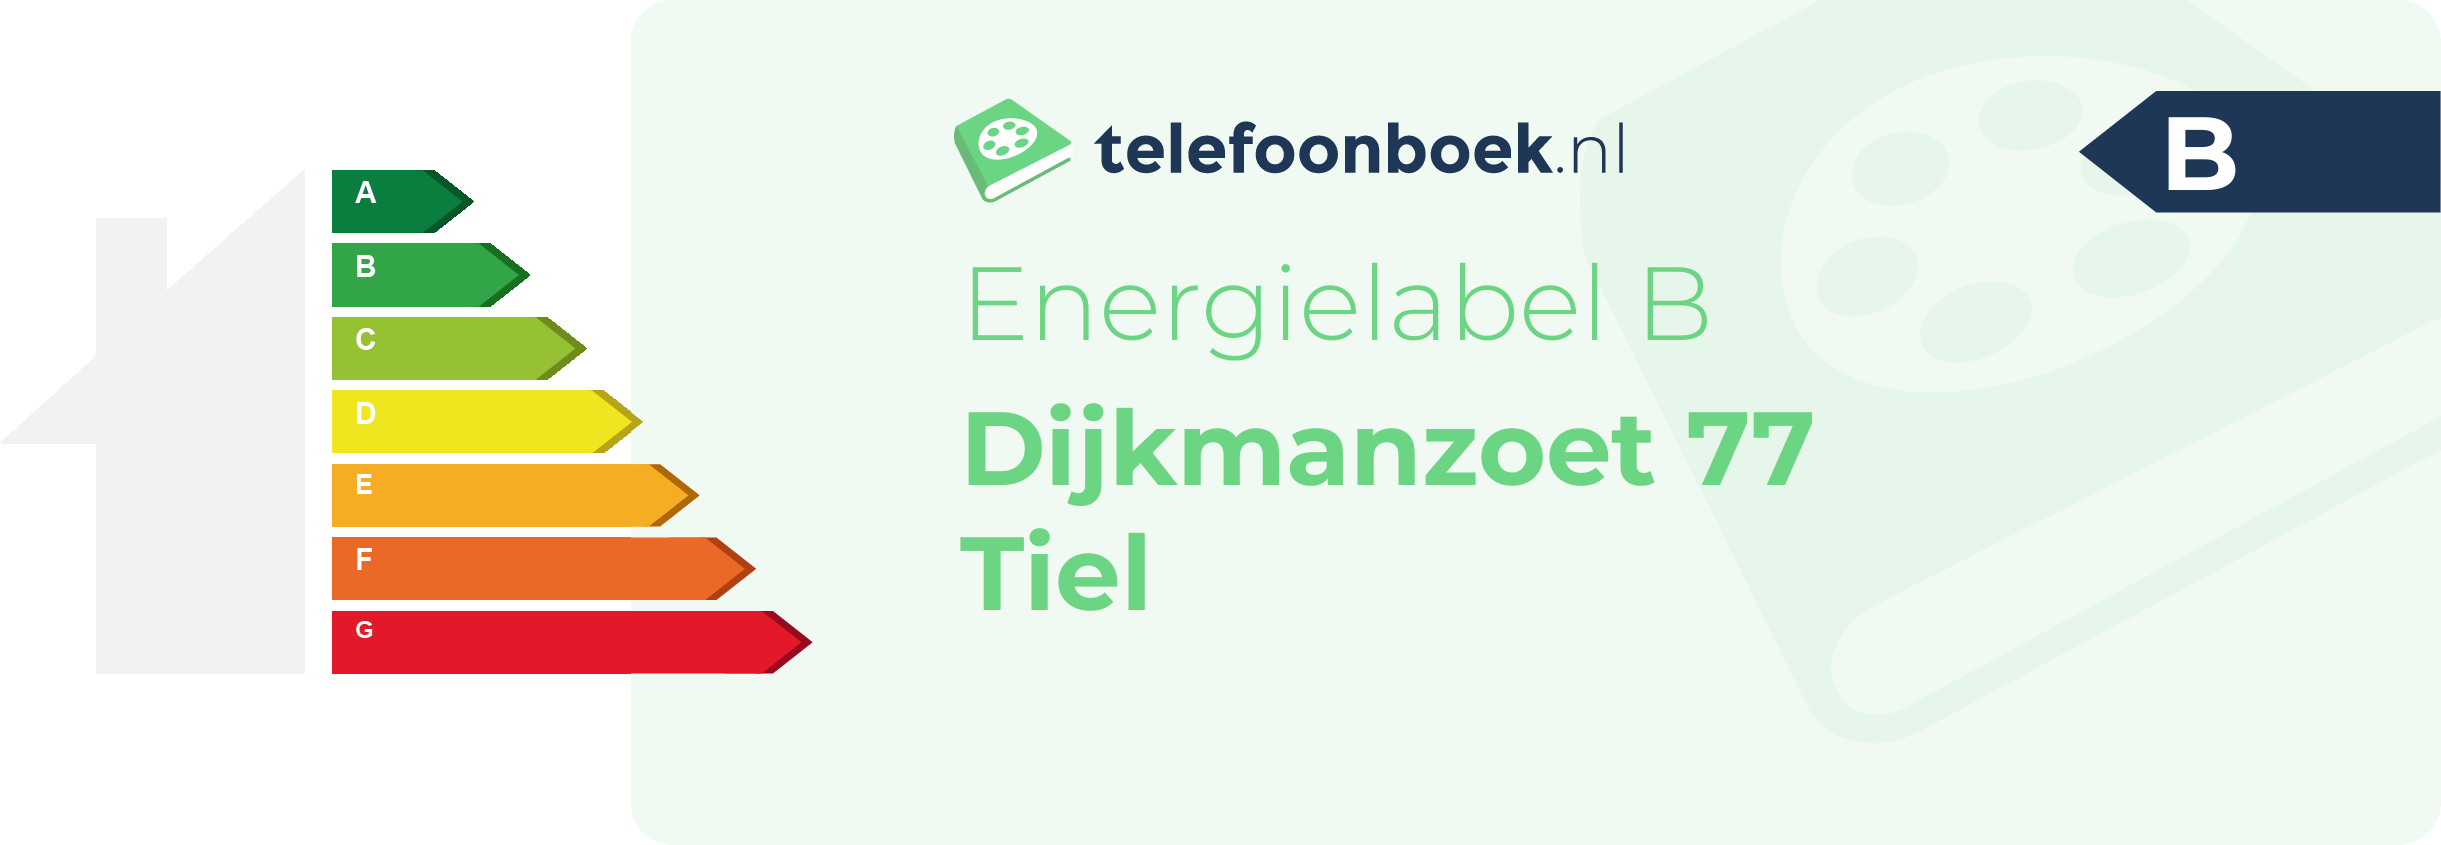 Energielabel Dijkmanzoet 77 Tiel